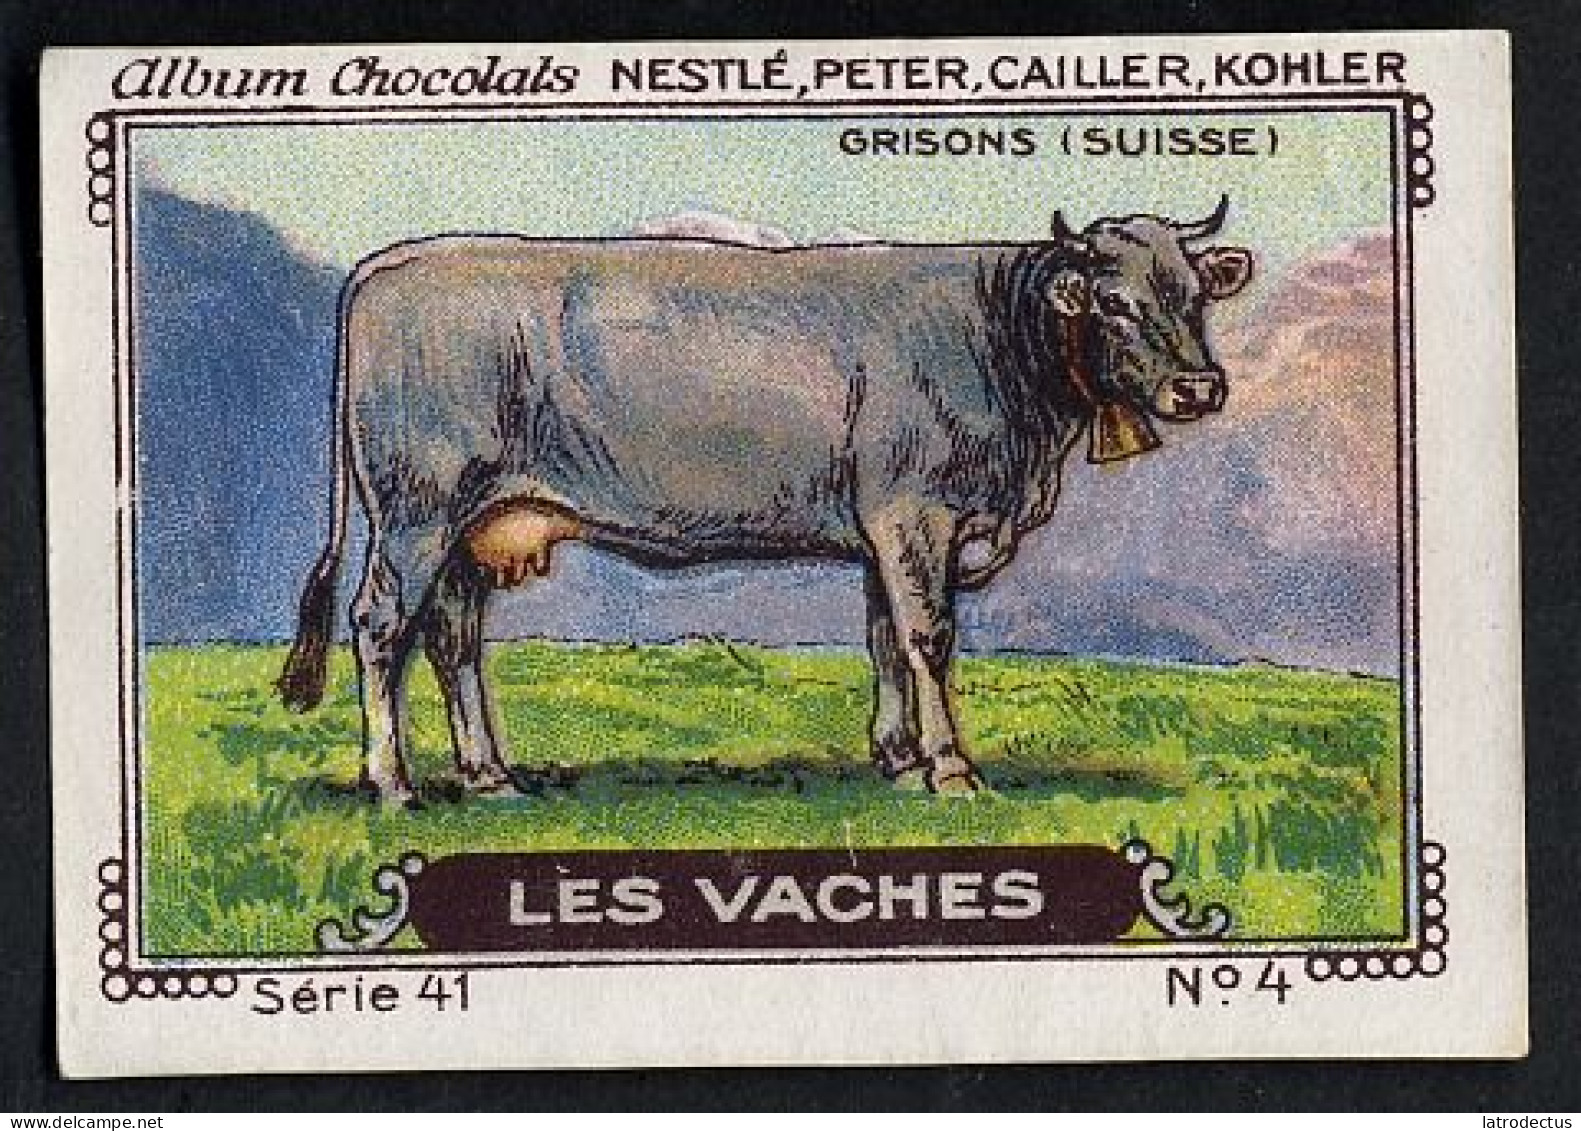 Nestlé - 41 - Les Vaches, Cows - 4 - Grisons (Suisse) - Nestlé